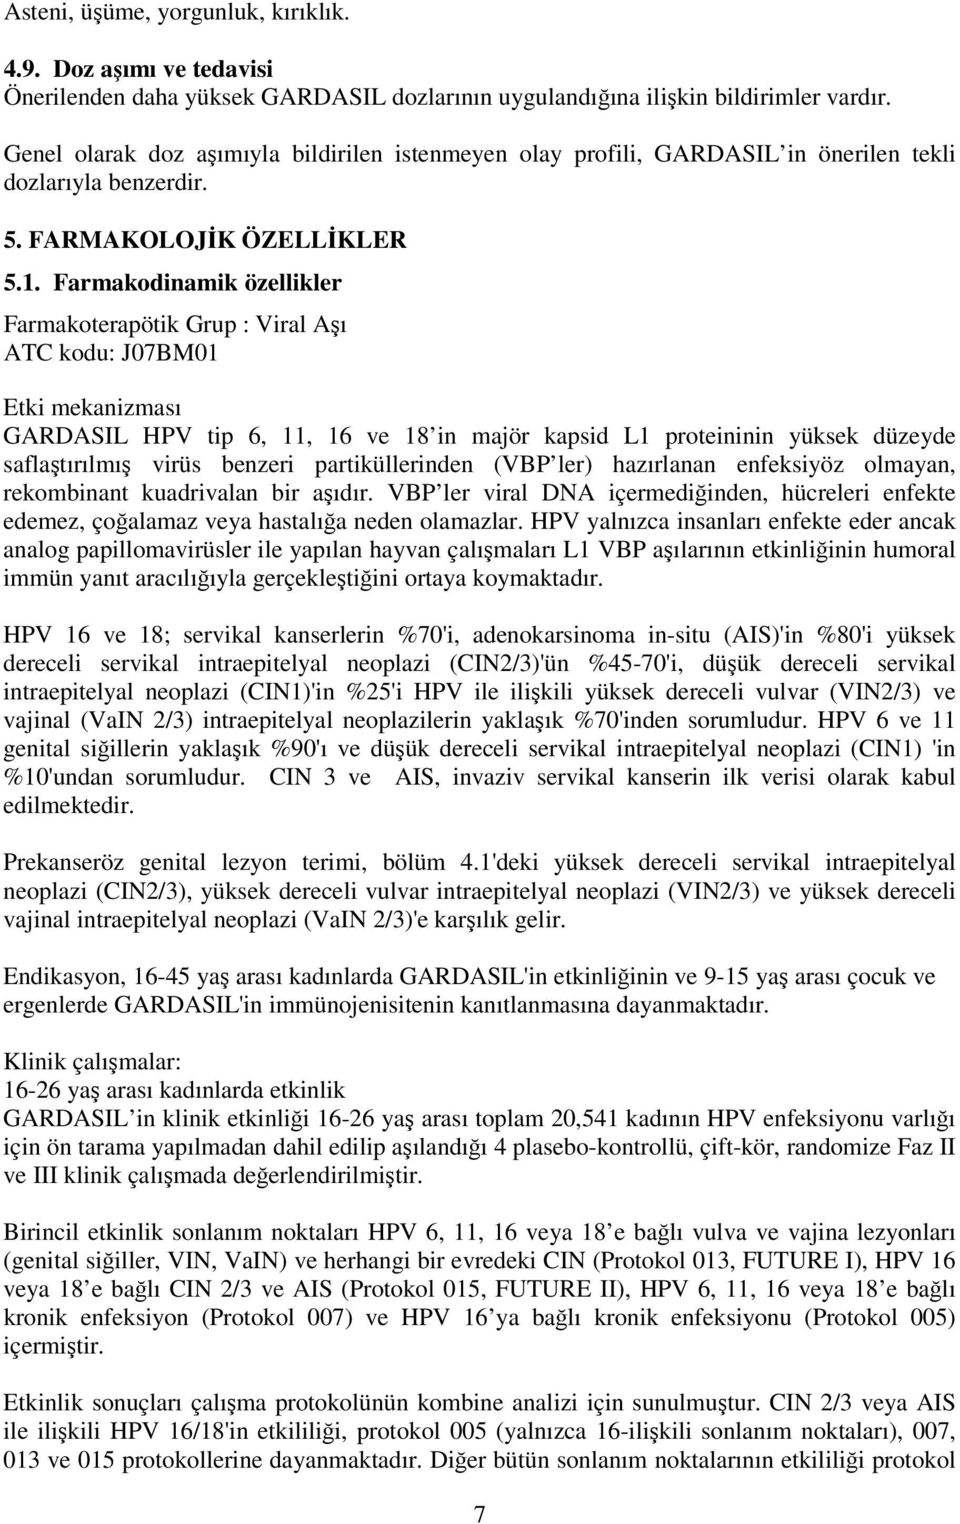 Farmakodinamik özellikler Farmakoterapötik Grup : Viral Aşı ATC kodu: J07BM01 Etki mekanizması GARDASIL HPV tip 6, 11, 16 ve 18 in majör kapsid L1 proteininin yüksek düzeyde saflaştırılmış virüs